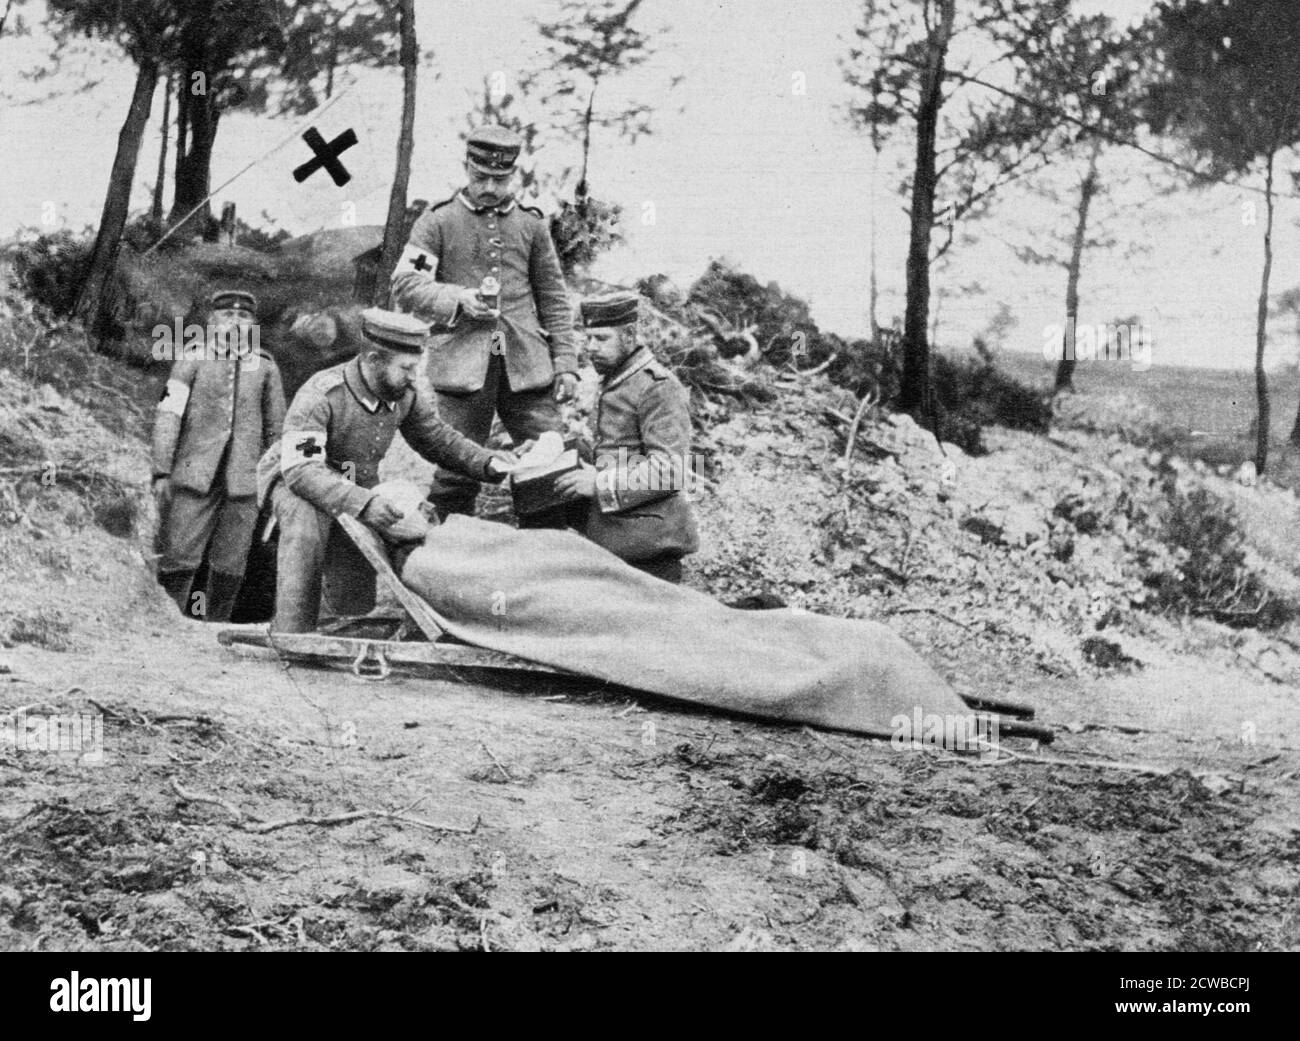 Un soldat allemand blessé dans un dressing, première Guerre mondiale, 1915. Une photographie de Der grosse Krieg à Bildern. Le photographe est inconnu. Banque D'Images